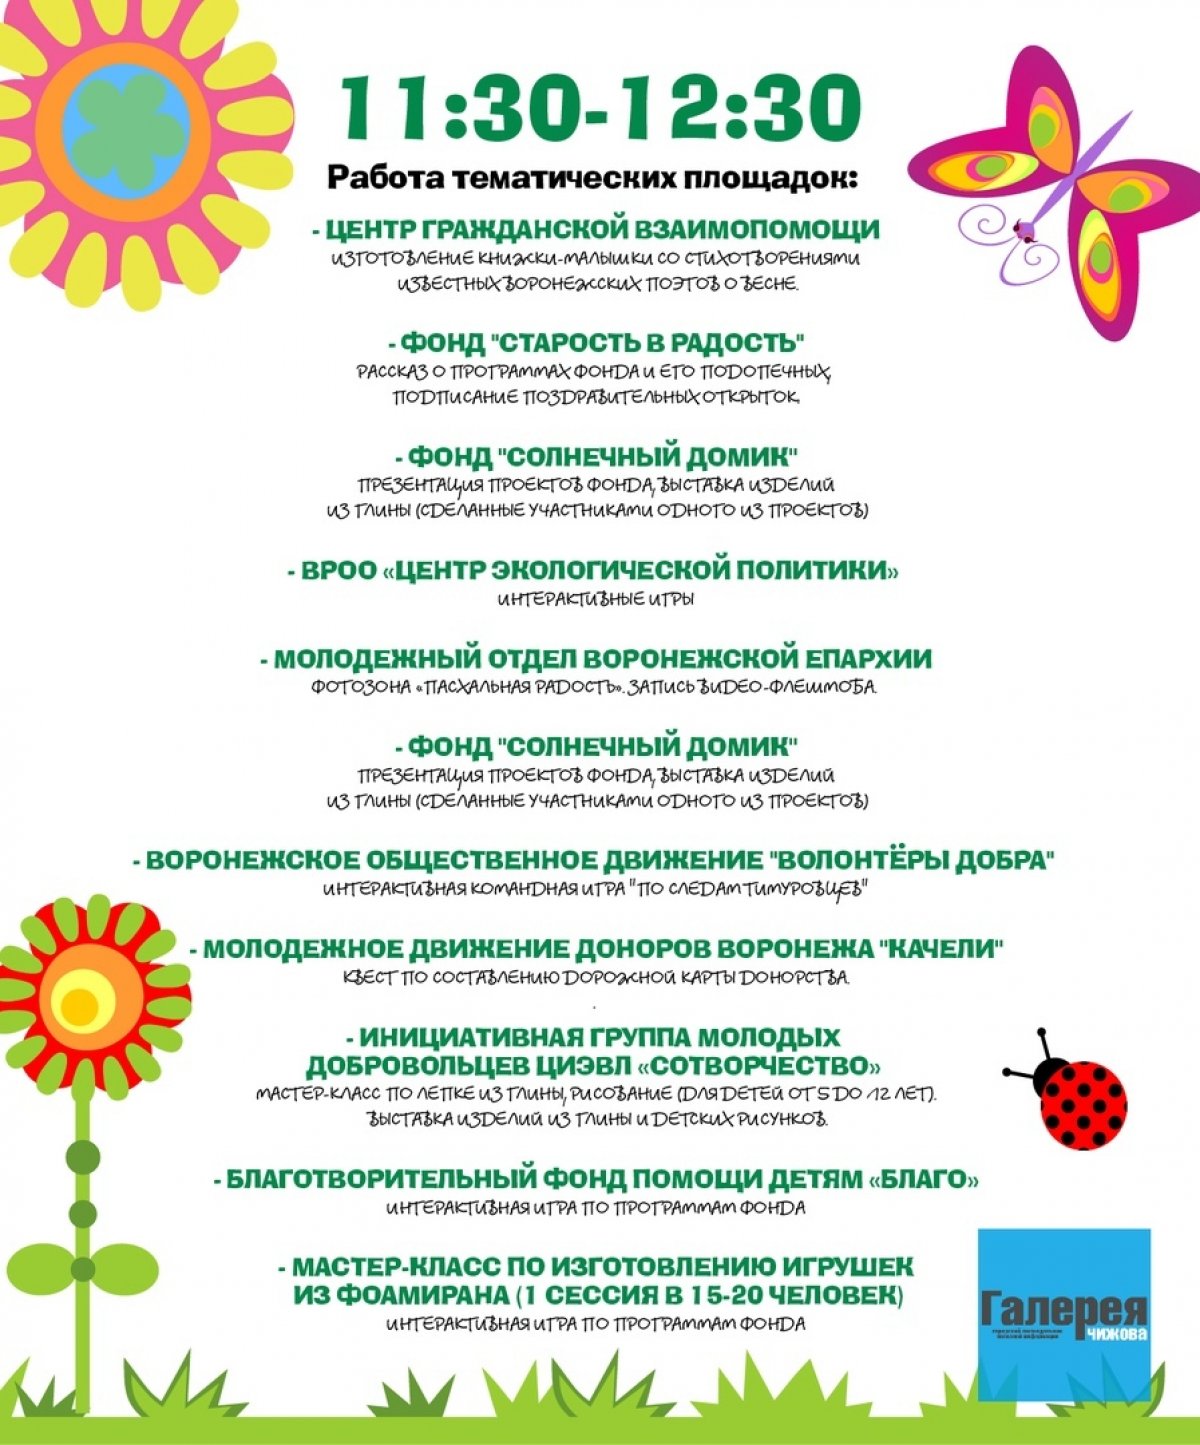 Воронежский институт высоких технологий и Центр Гражданской Взаимопомощи приглашают всех желающих на открытие «Весенней Недели Добра – 2019»